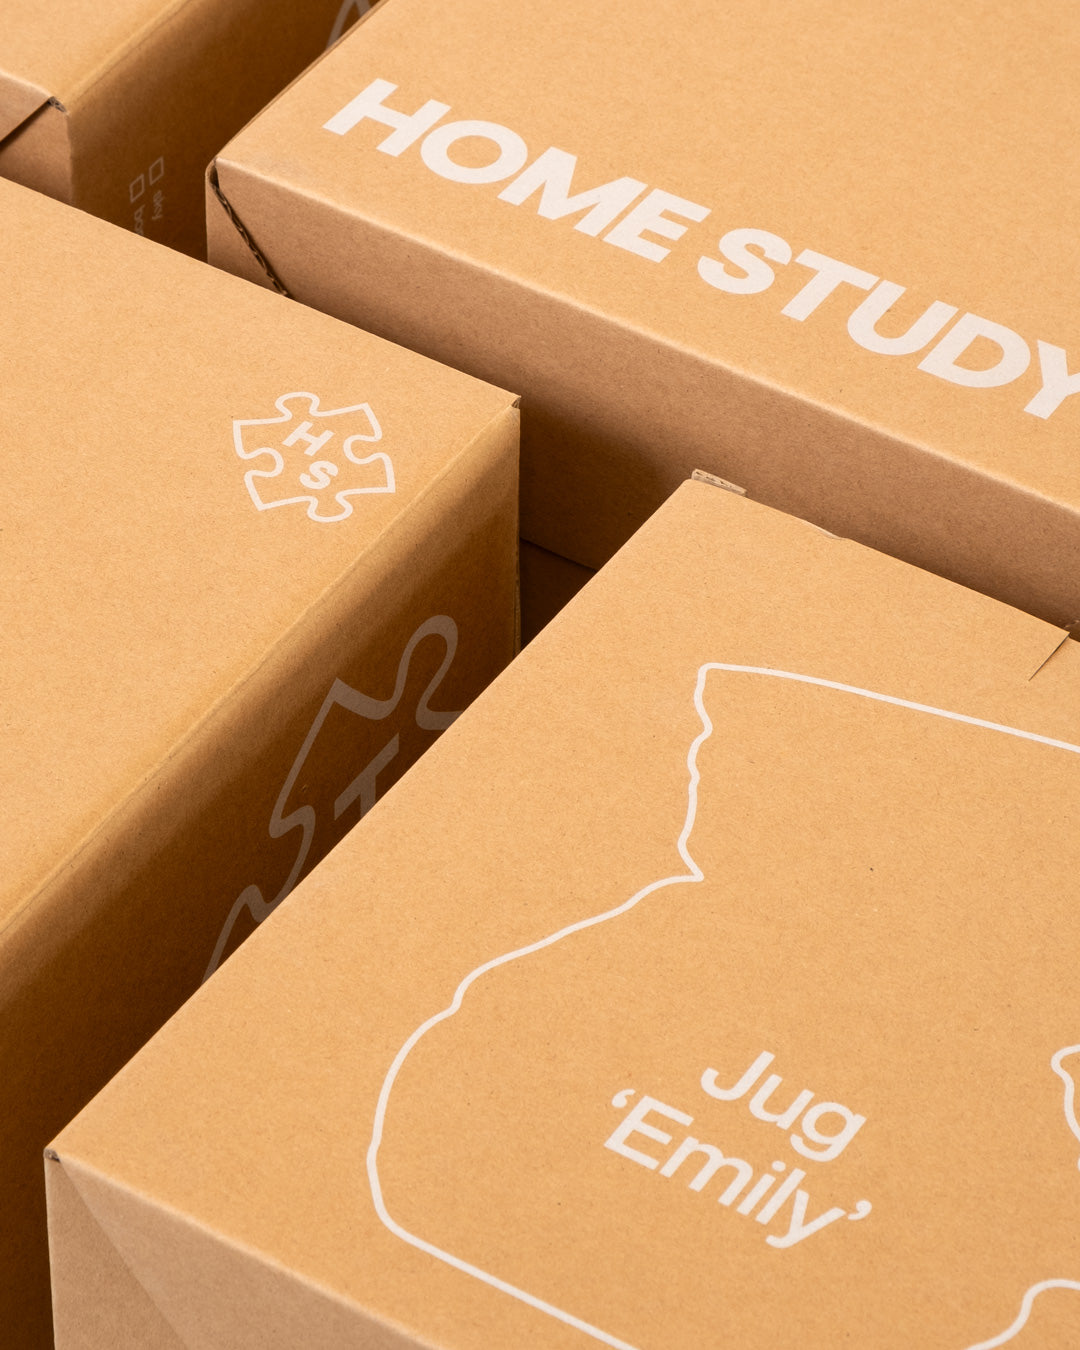 Home Studyo - Handamde ceramic packaging